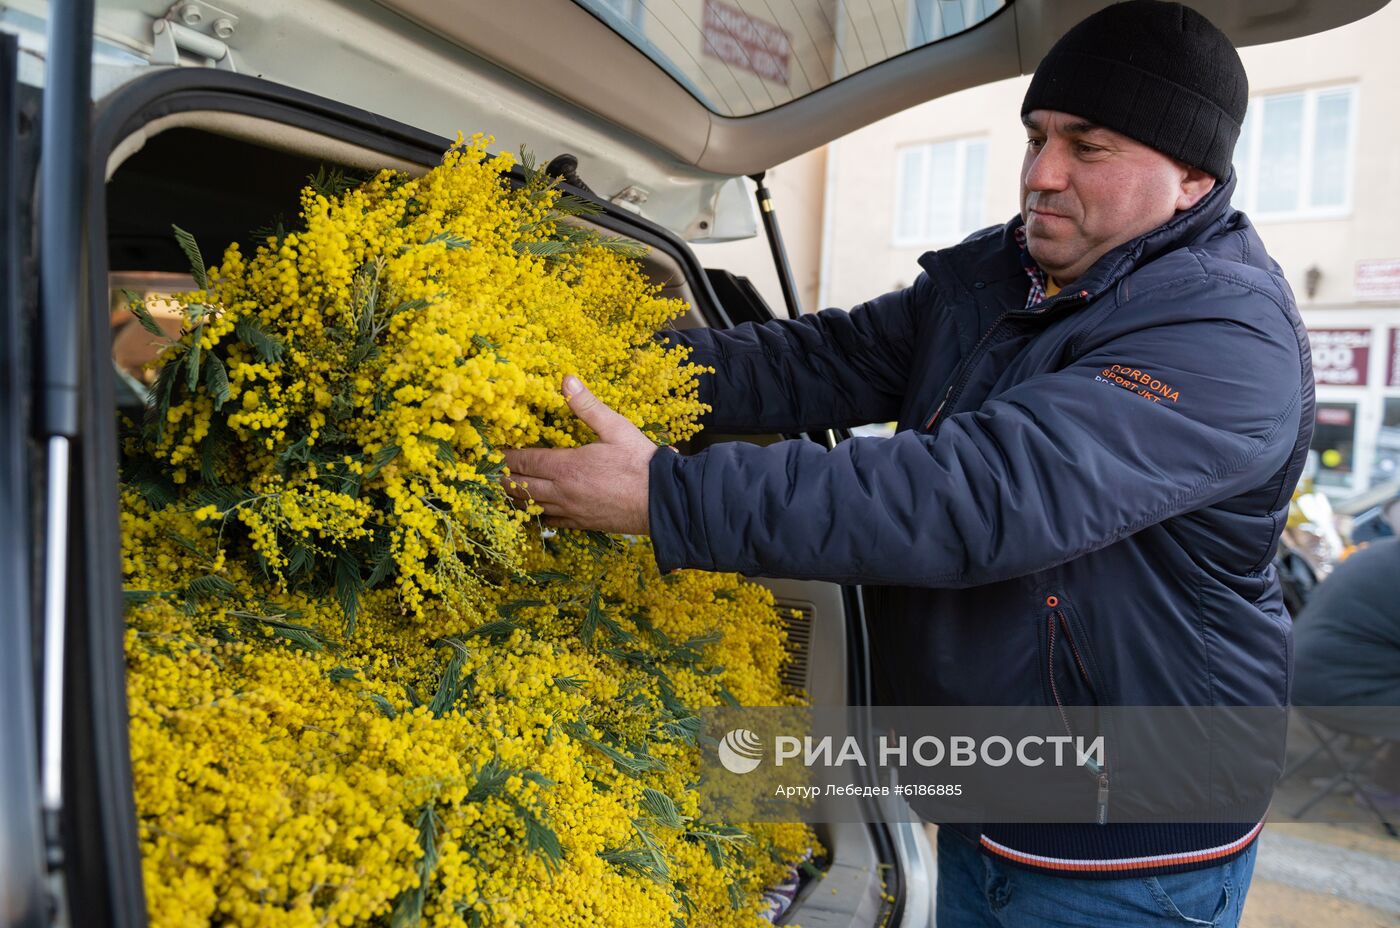 Продажа мимозы из Абхазии на российско-абхазской границе 